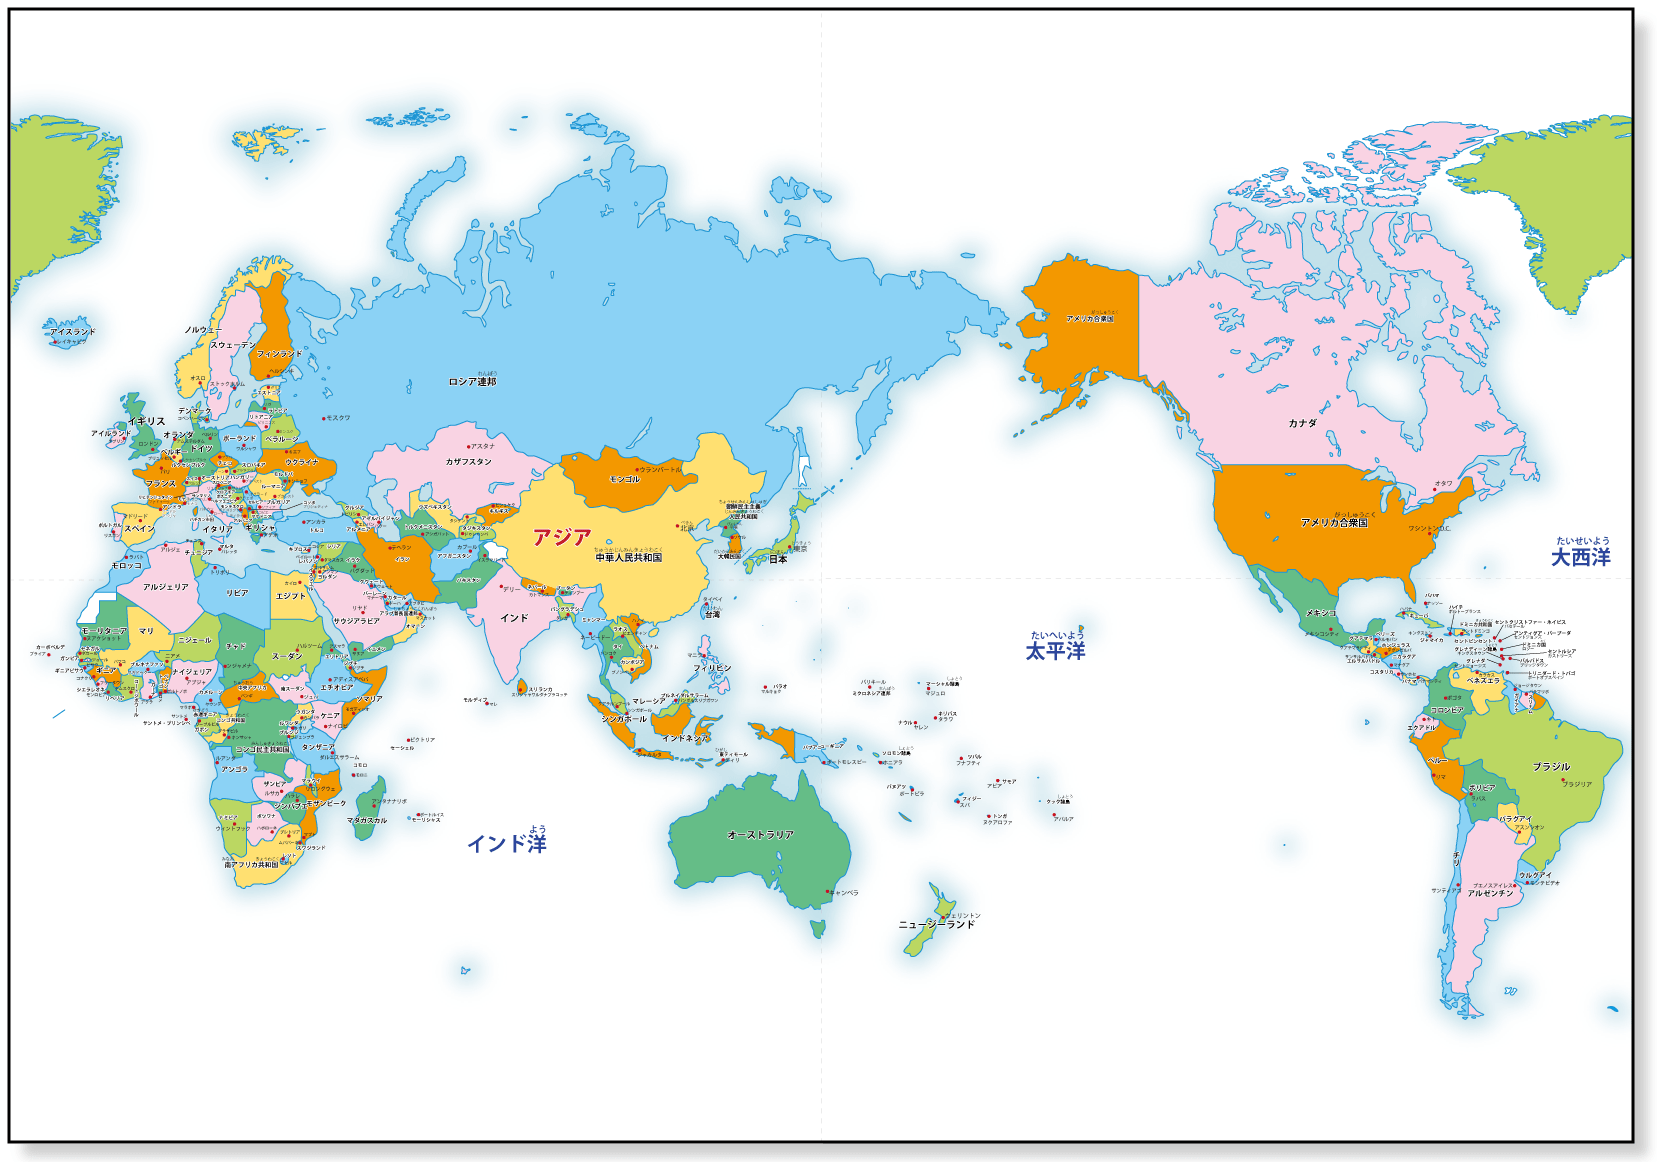 世界地理图册合集|高清 - 哔哩哔哩